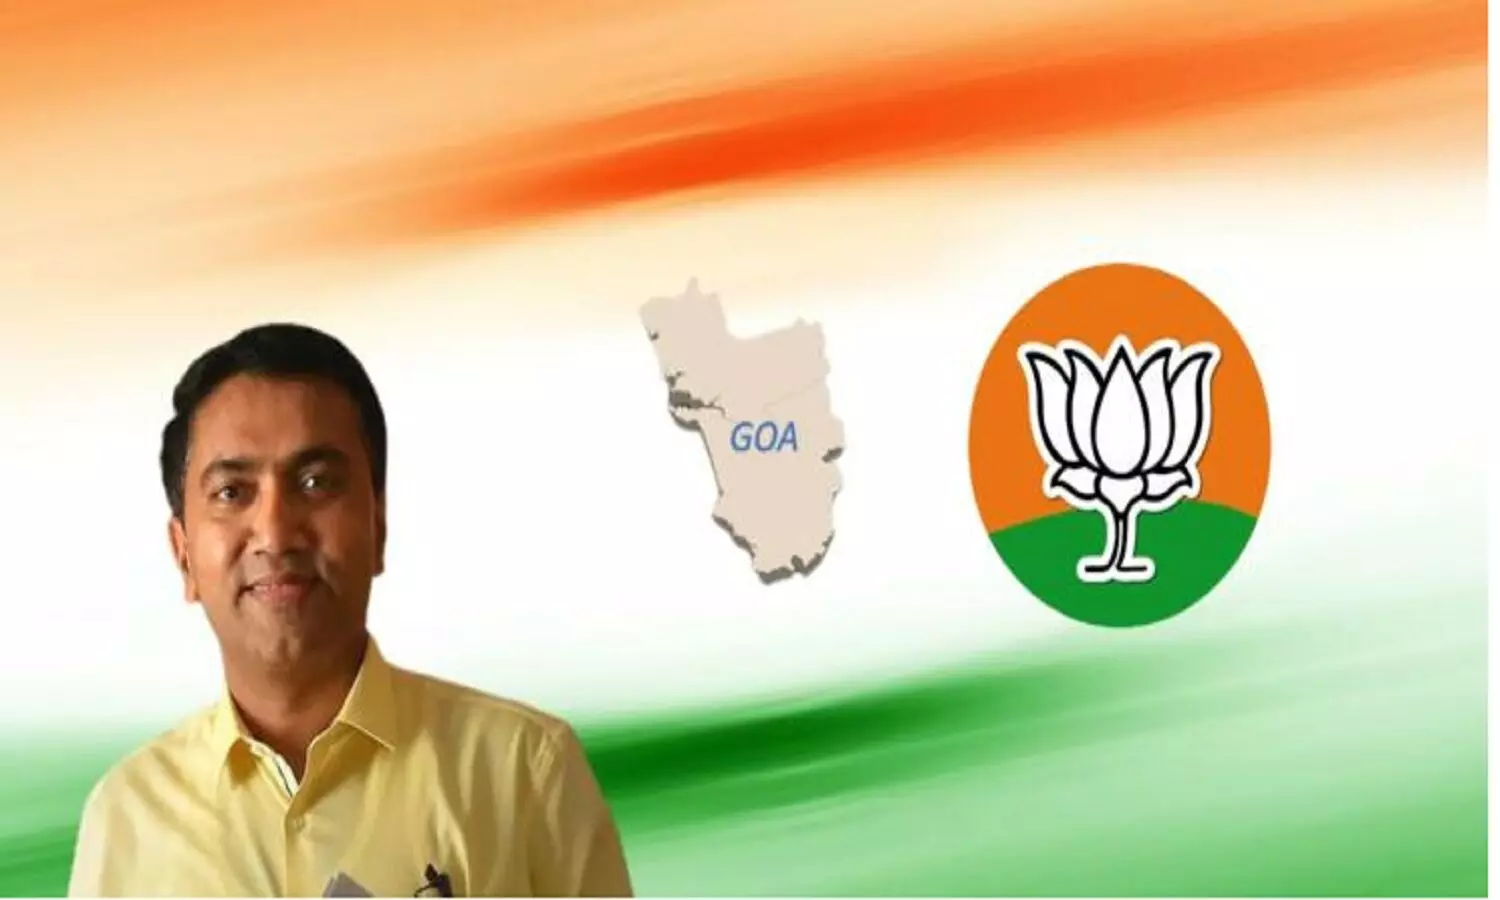 Goa के चुनाव परिणाम: सिर्फ एक सीट से चूक गई बीजेपी लेकिन फिर भी गोवा में सरकार बनेगी